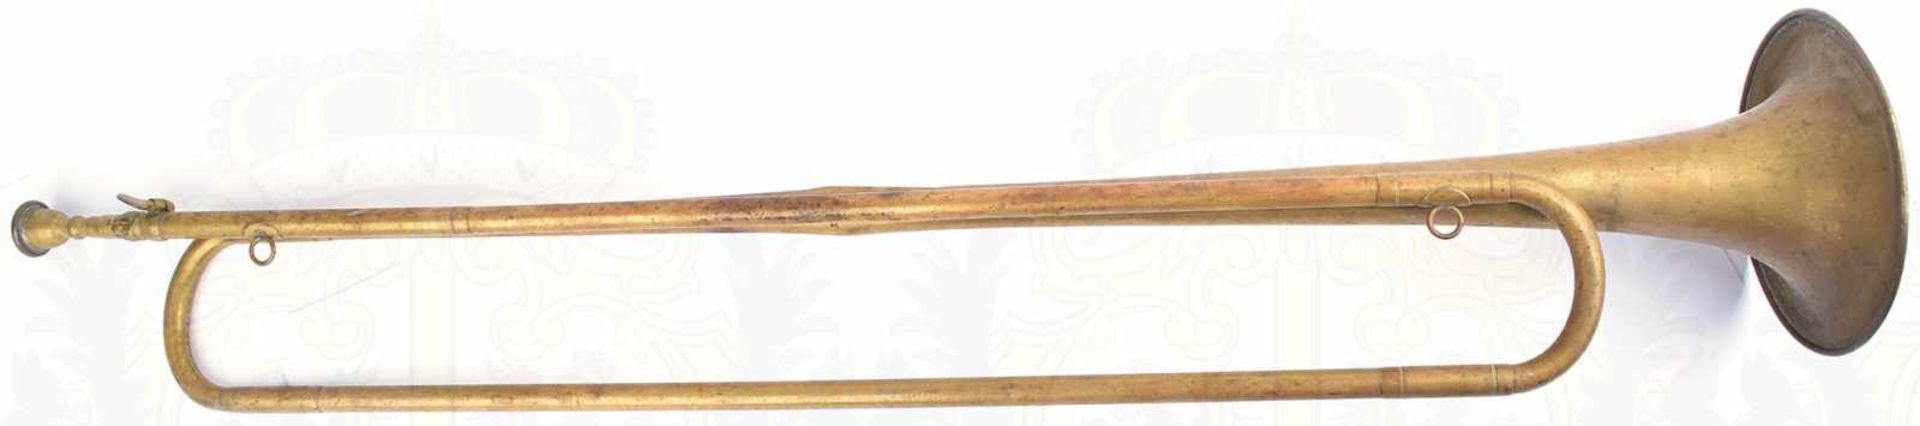 FANFARE, Tombakblech, mit Mundstück, einige Dellen, L. 78cm, 30er bis 50er Jahre